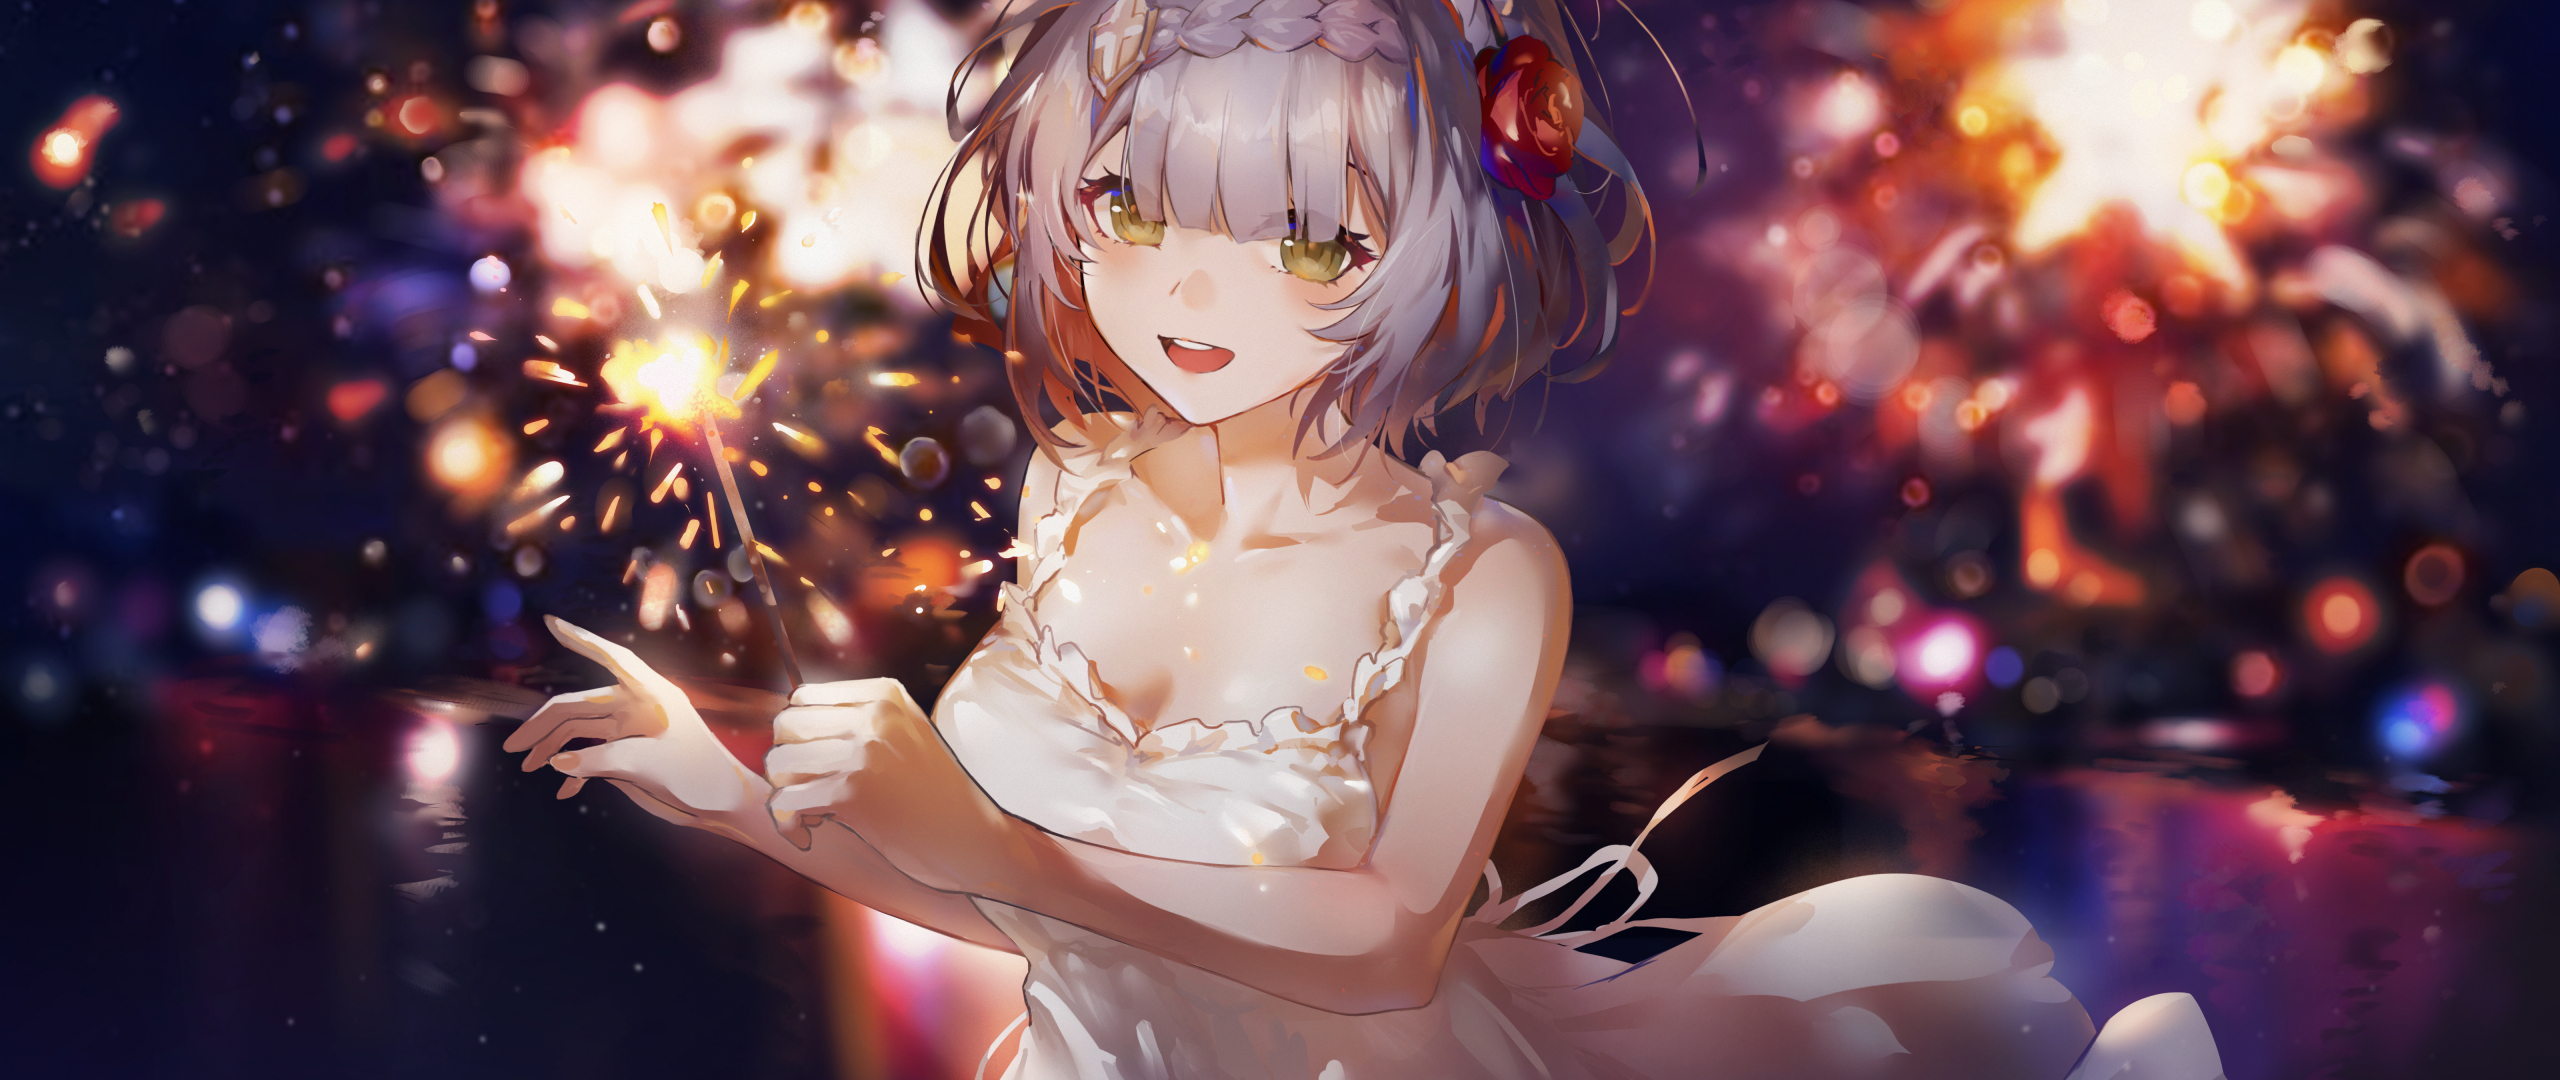 White dress, cute anime girl, art, 2560x1080 wallpaper